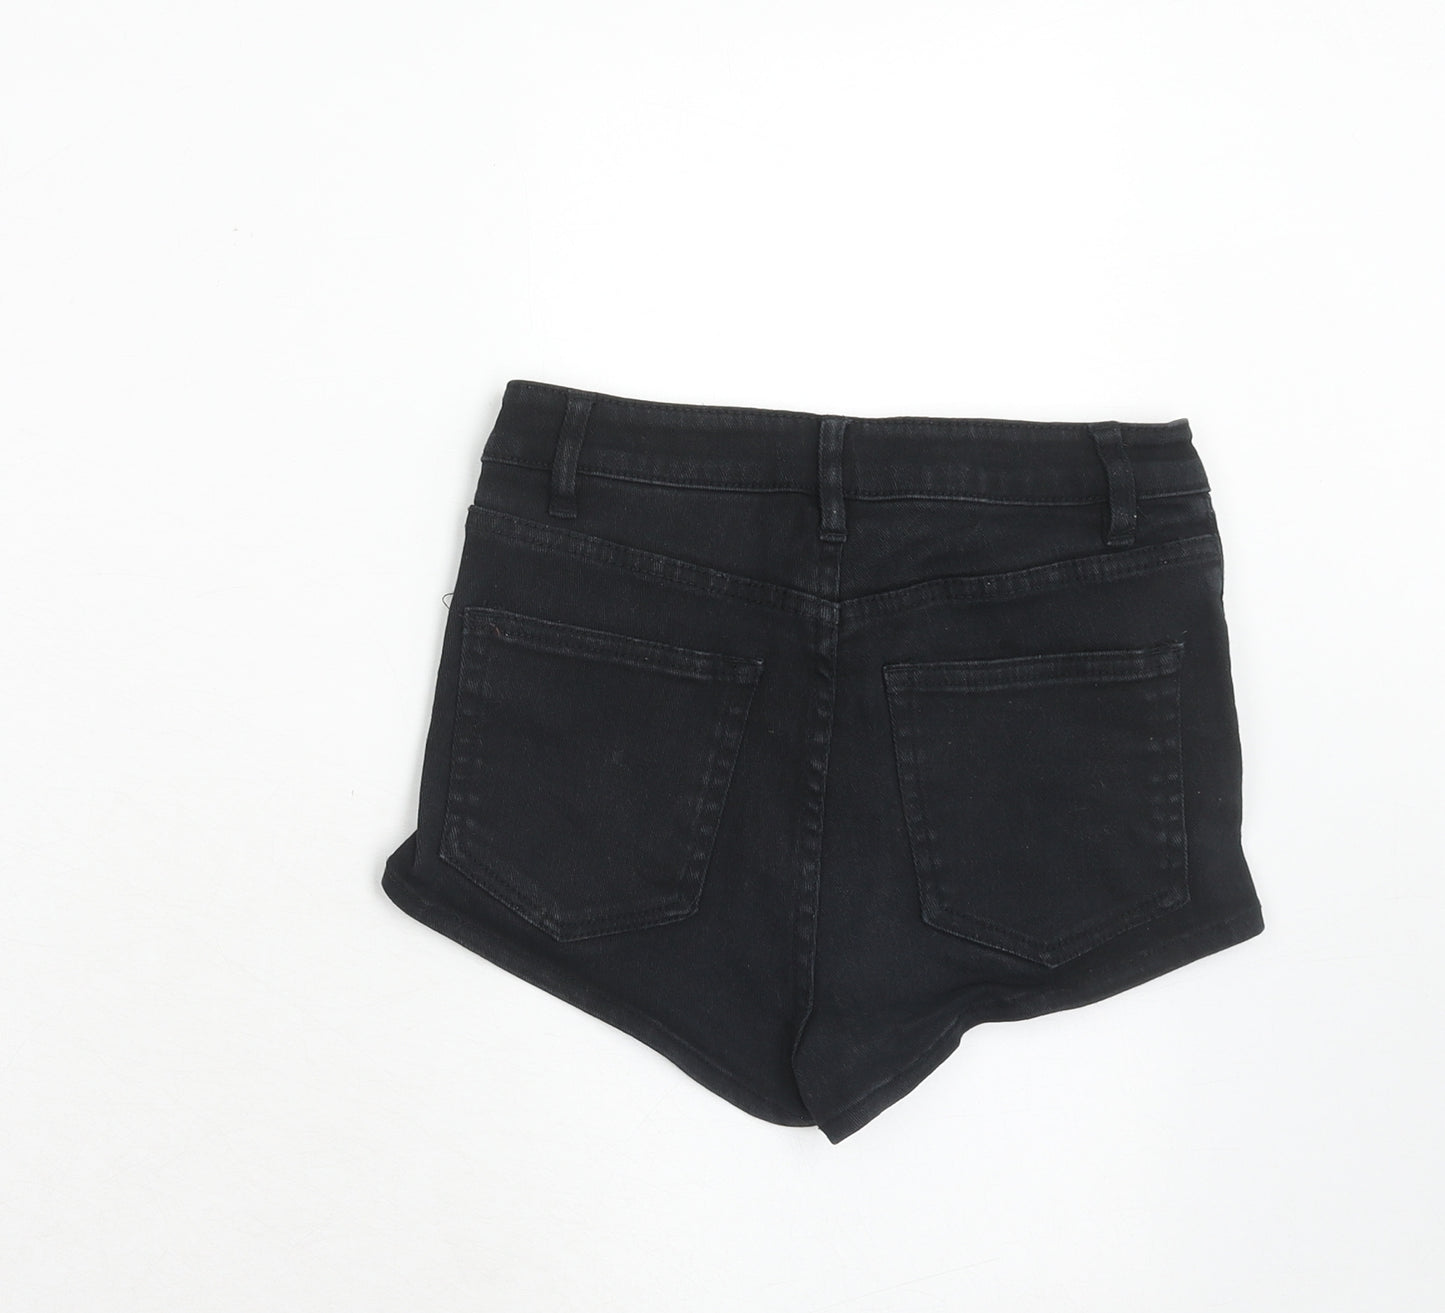 H&M Womens Black Cotton Boyfriend Shorts Size 4 Regular Zip